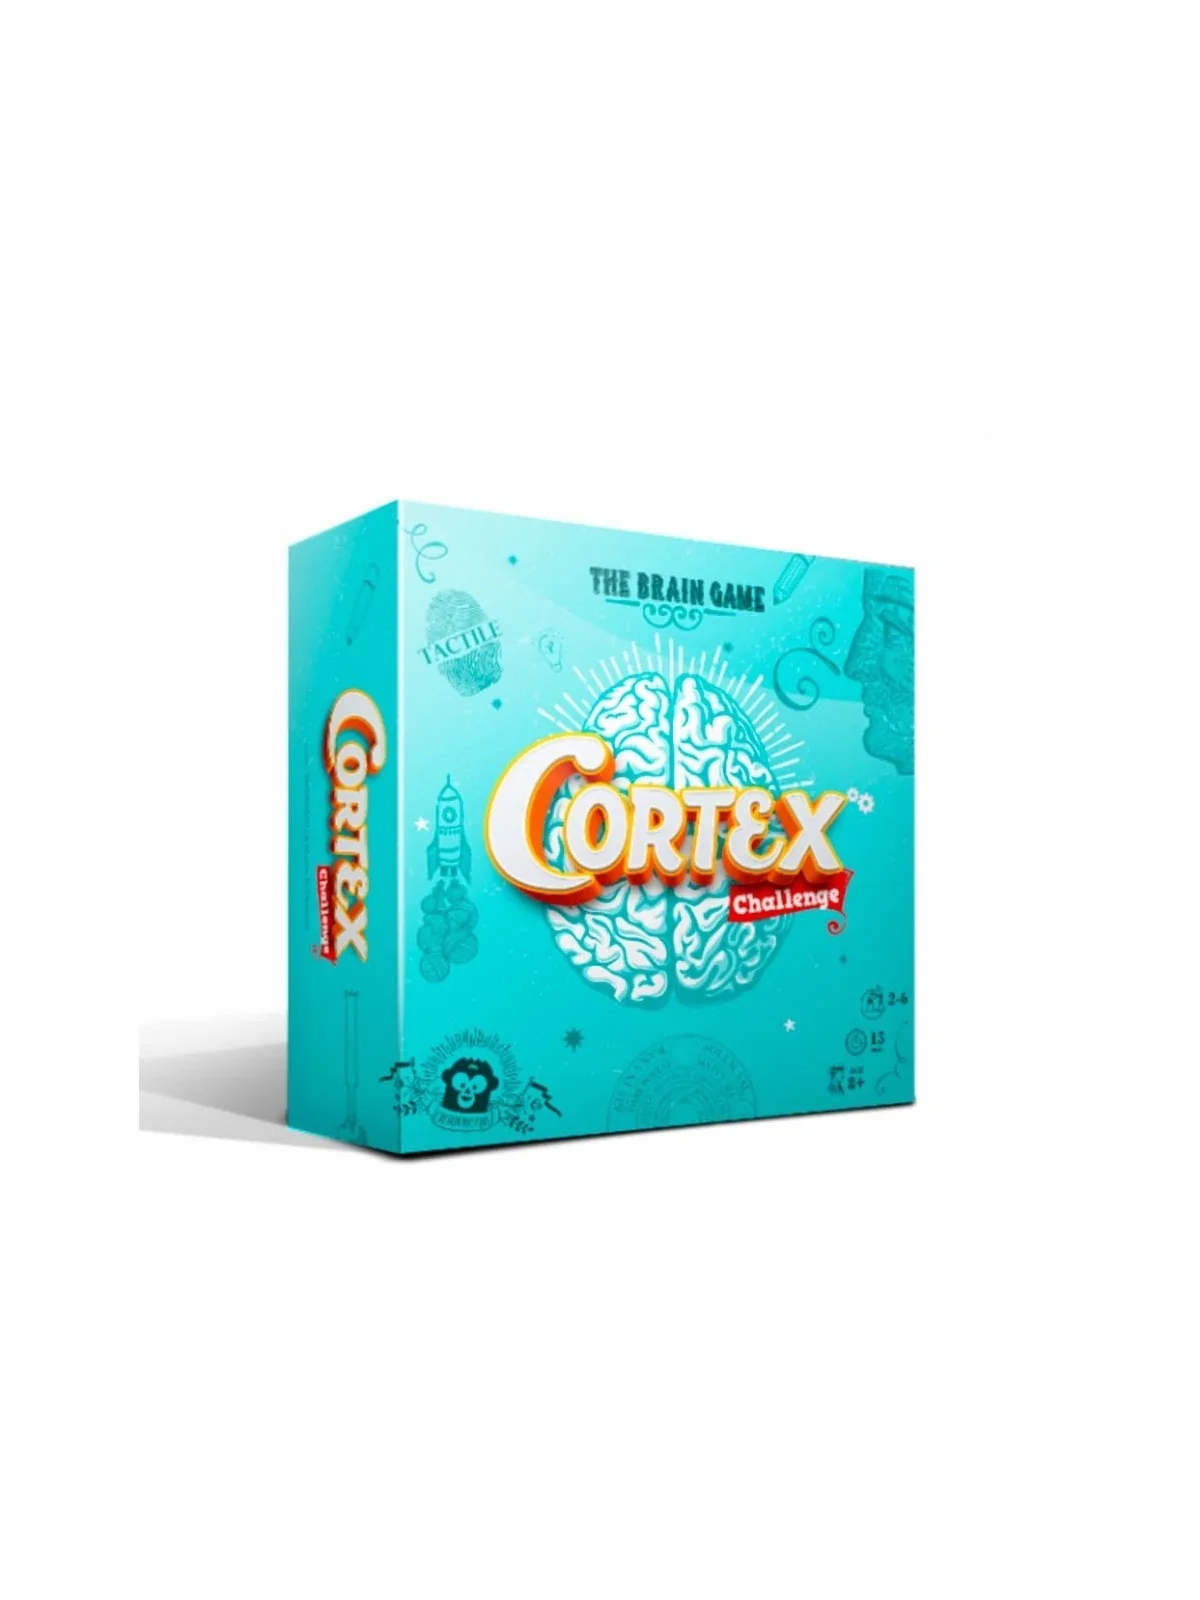 Comprar Cortex Challenge barato al mejor precio 14,39 € de Zygomatic